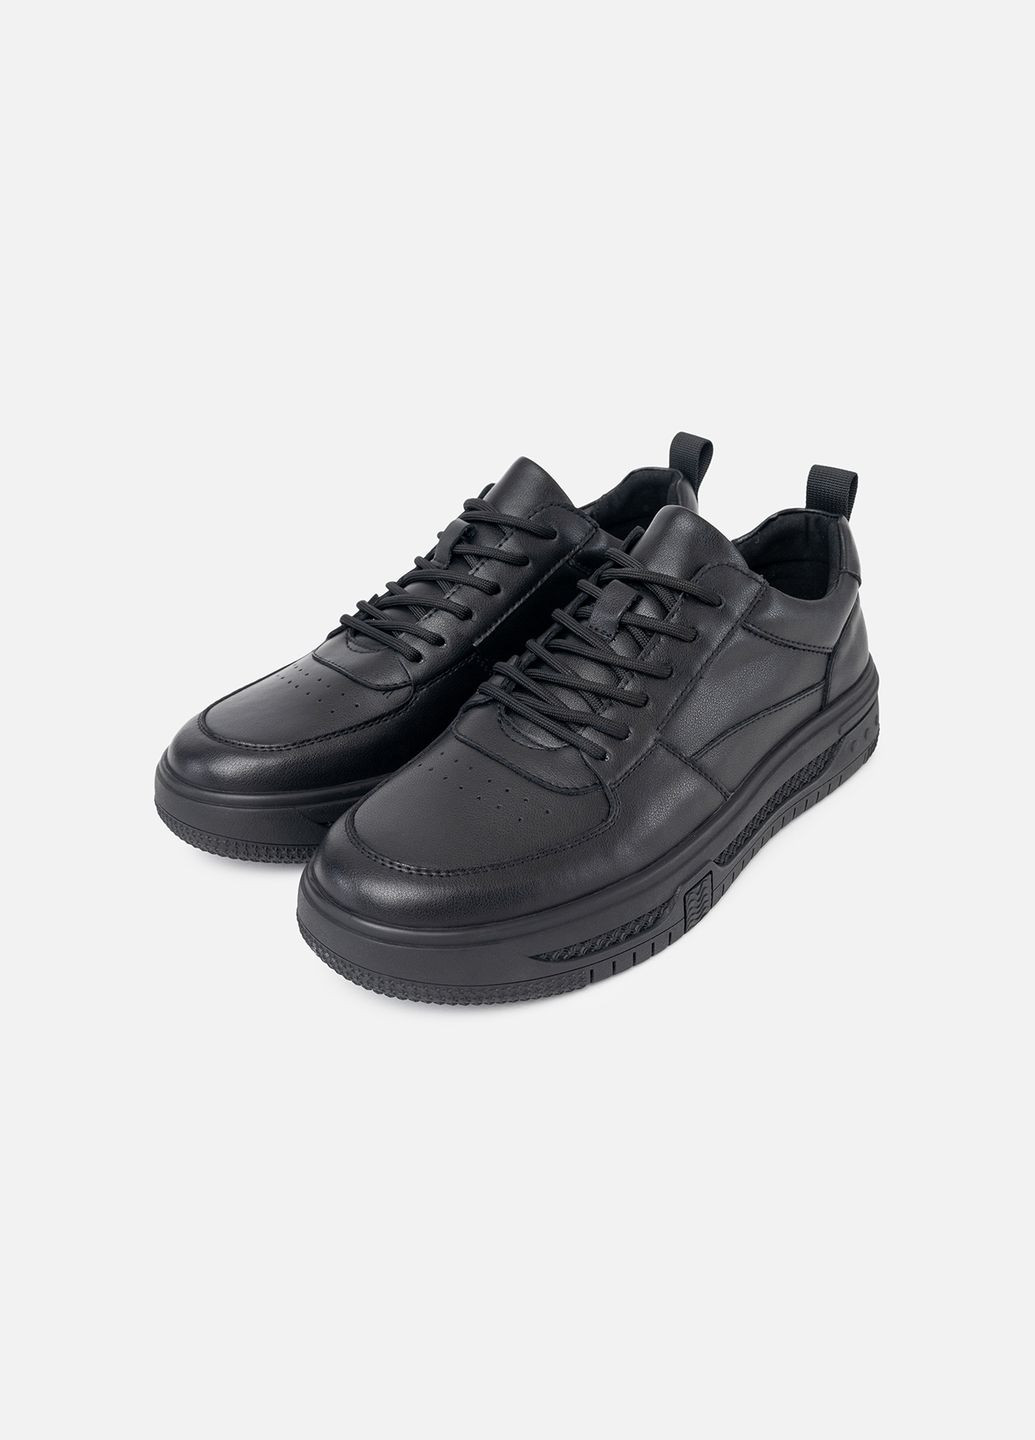 Черные демисезонные мужские кроссовки цвет черный цб-00232826 Yuki